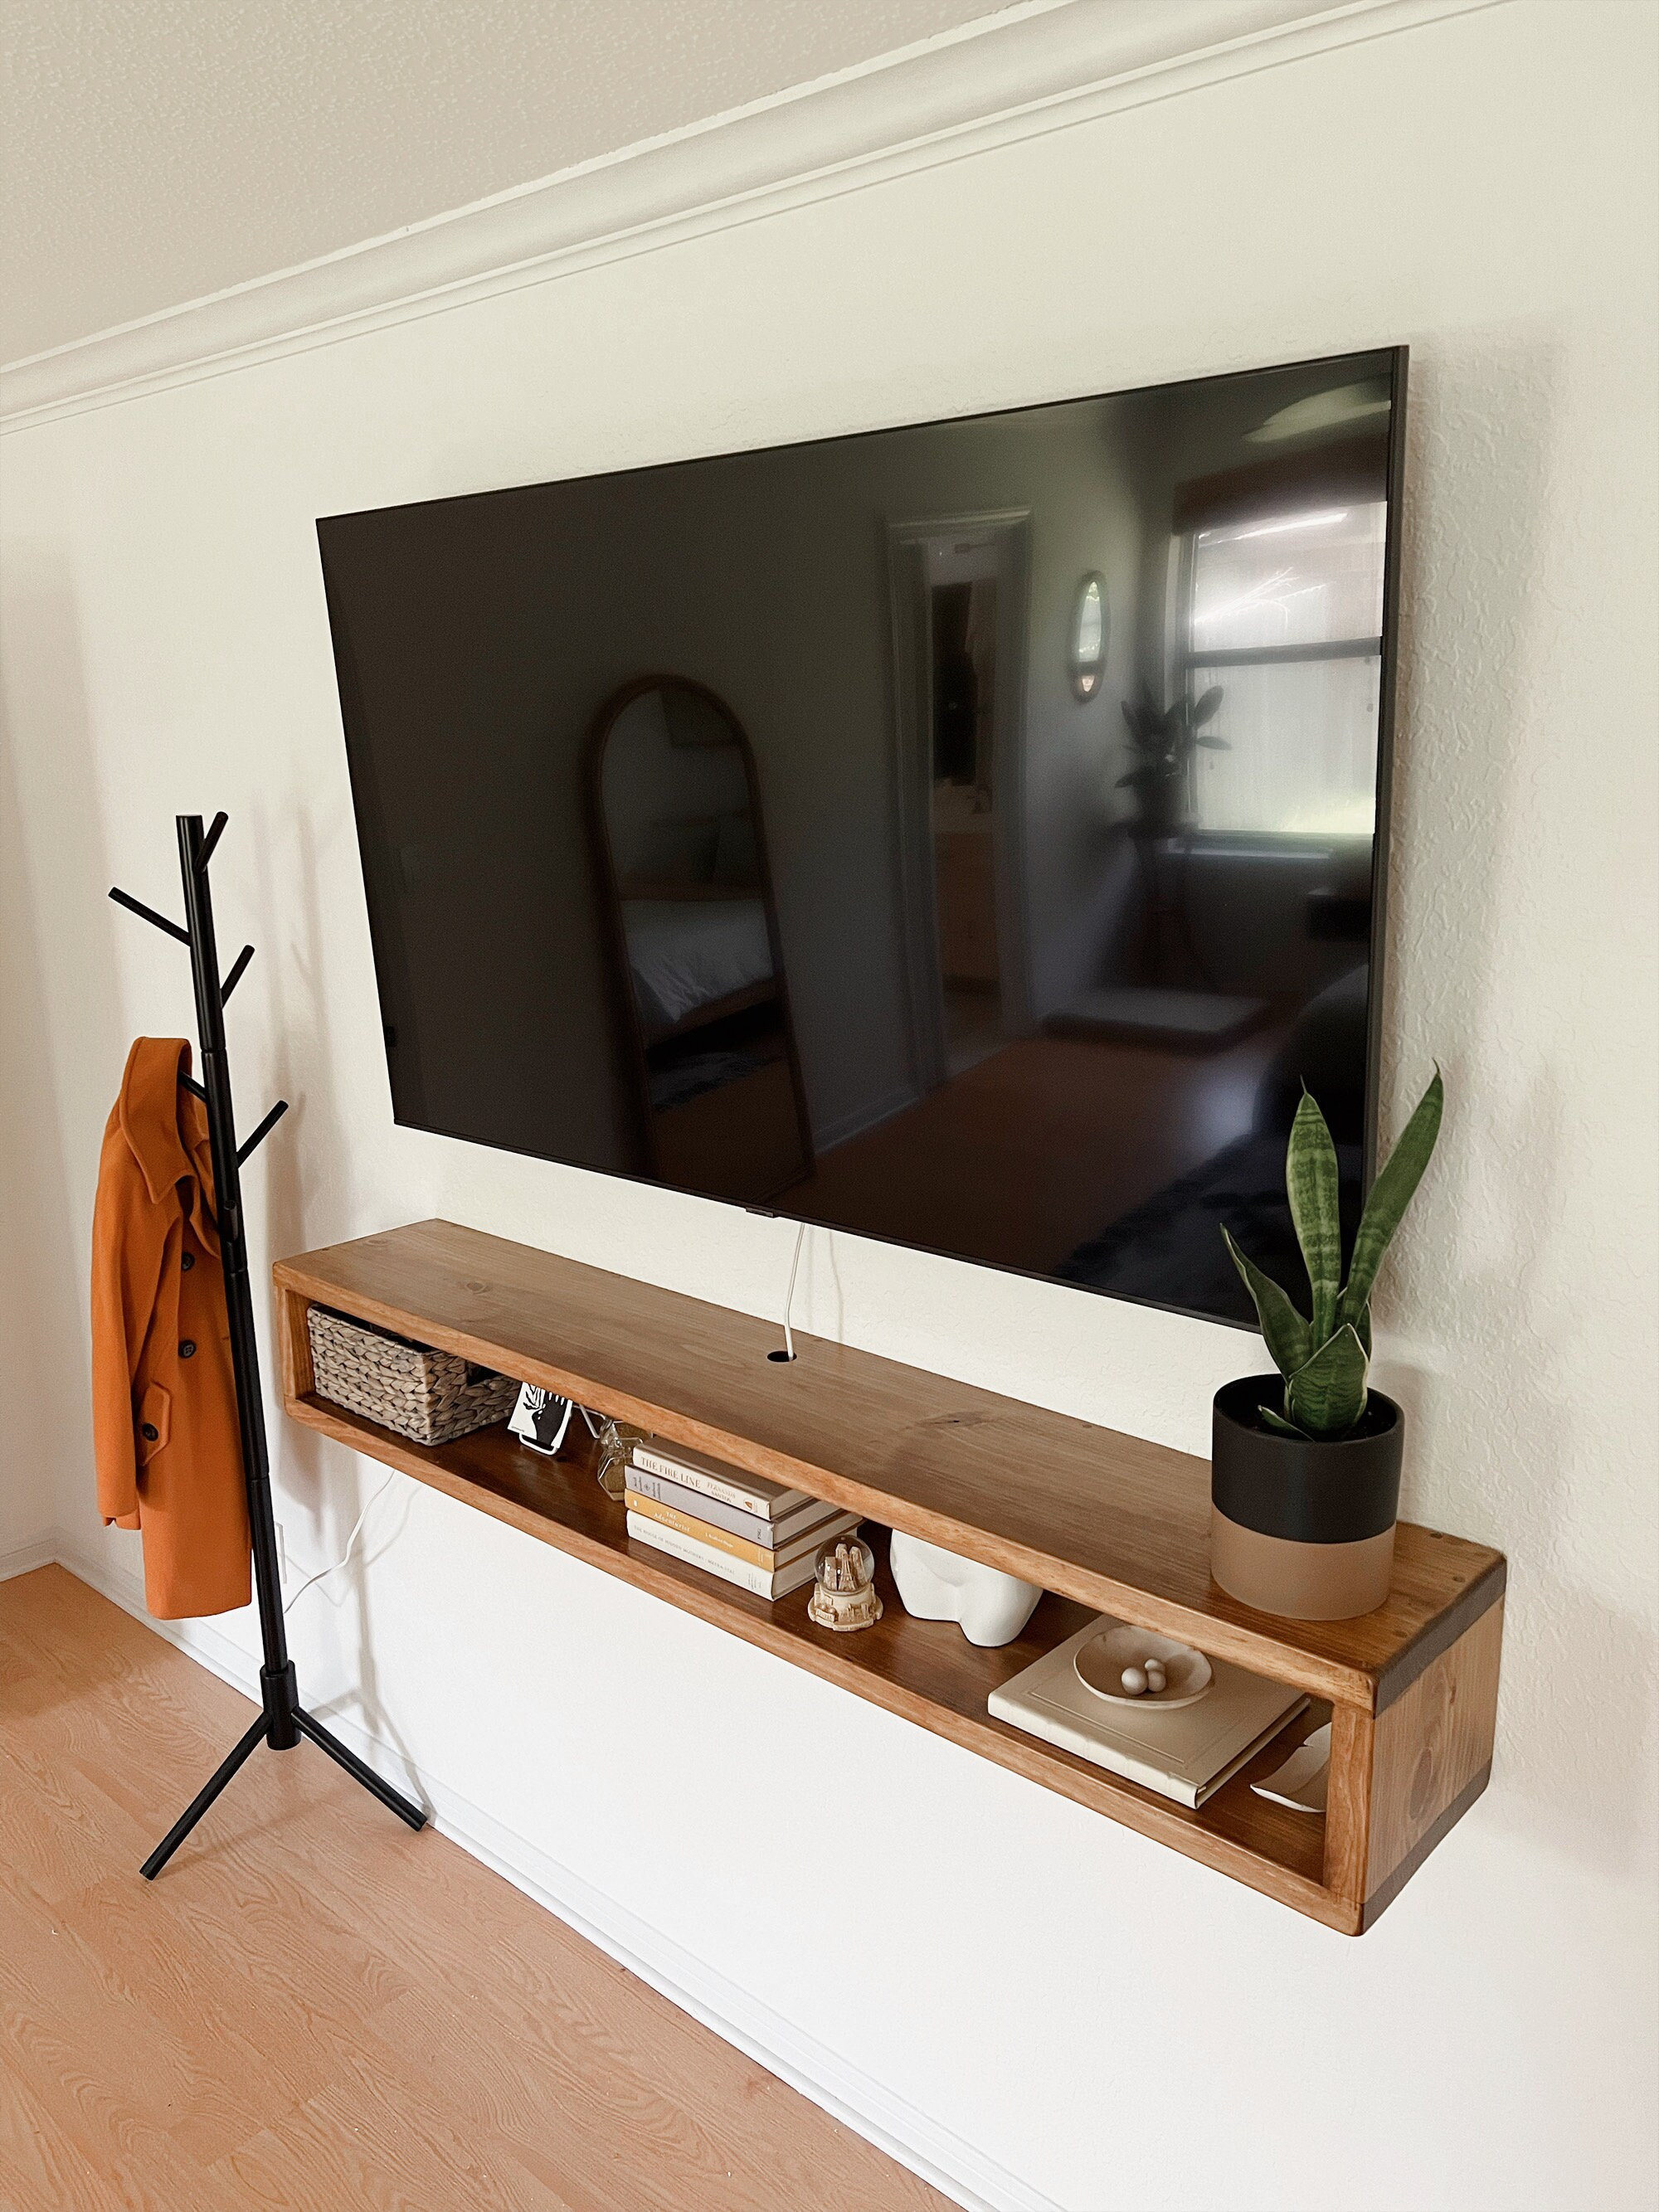  Soporte de TV flotante para colgar en la pared, moderno soporte  flotante para TV, consola de TV escalable de 7.4-10.2 ft, estante debajo de  la TV con almacenamiento para sala de